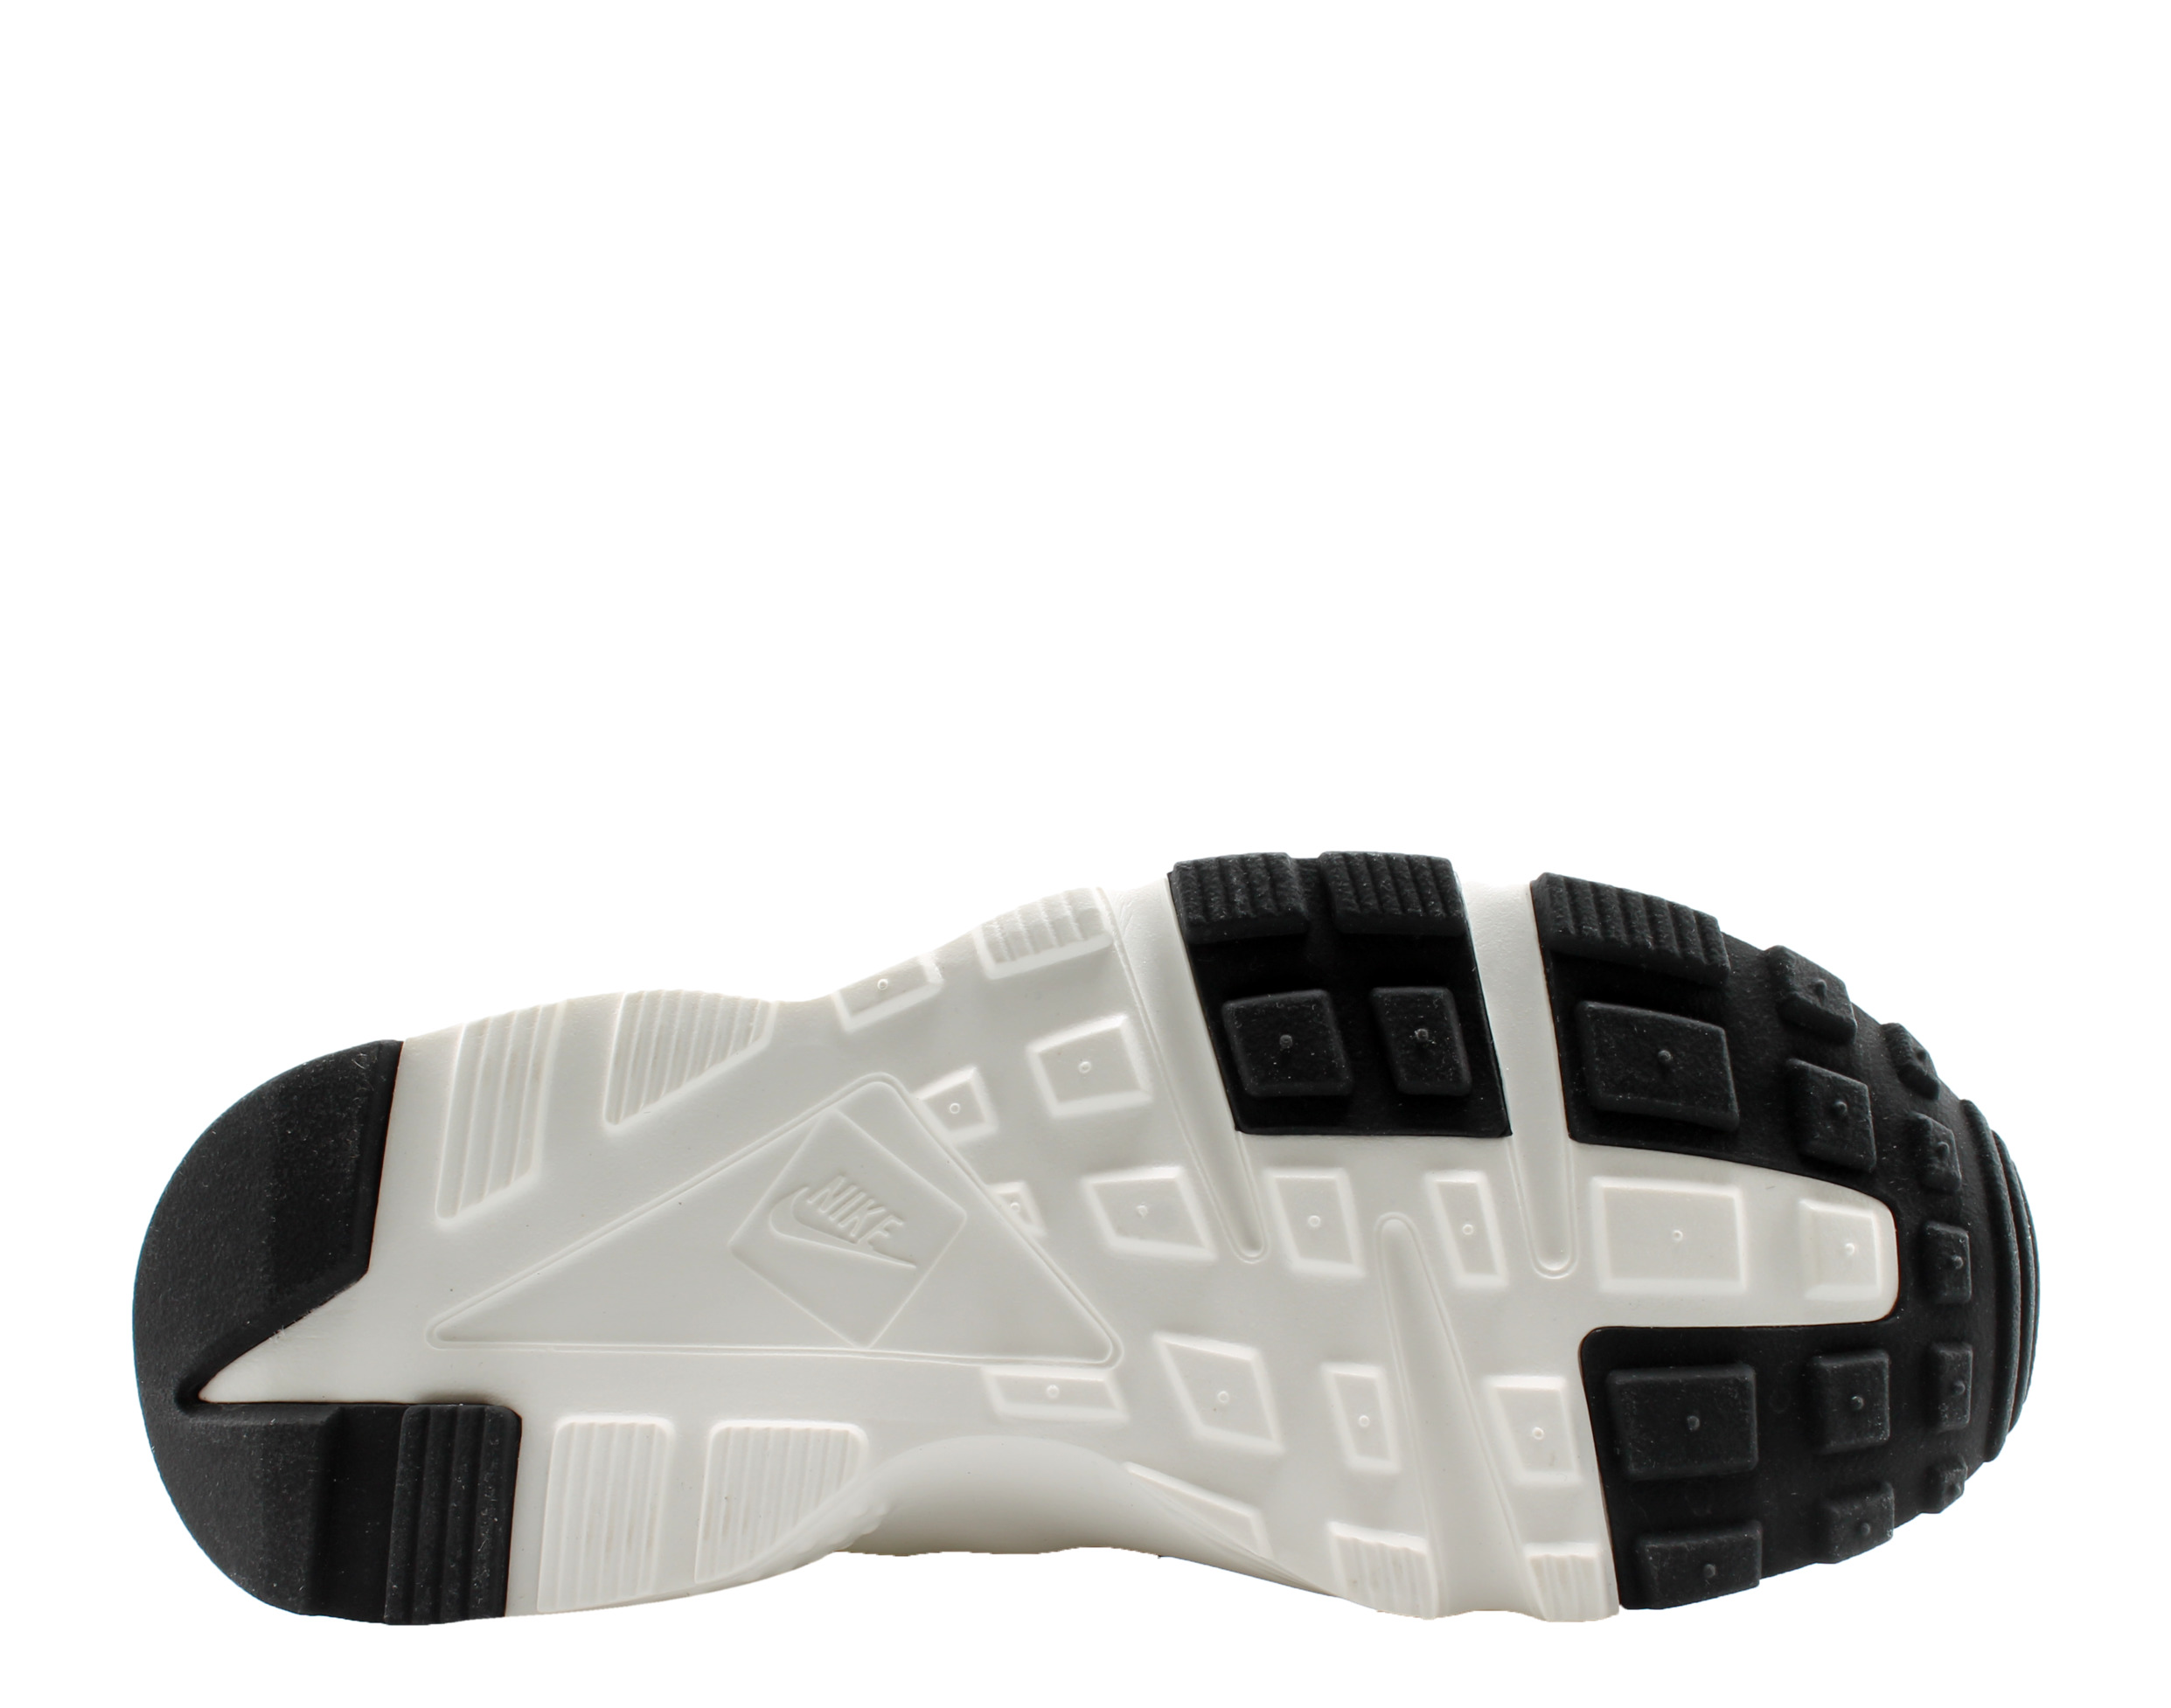 Nike Huarache Run (GS) Big Kids Running Shoes Size 4.5 - image 5 of 6